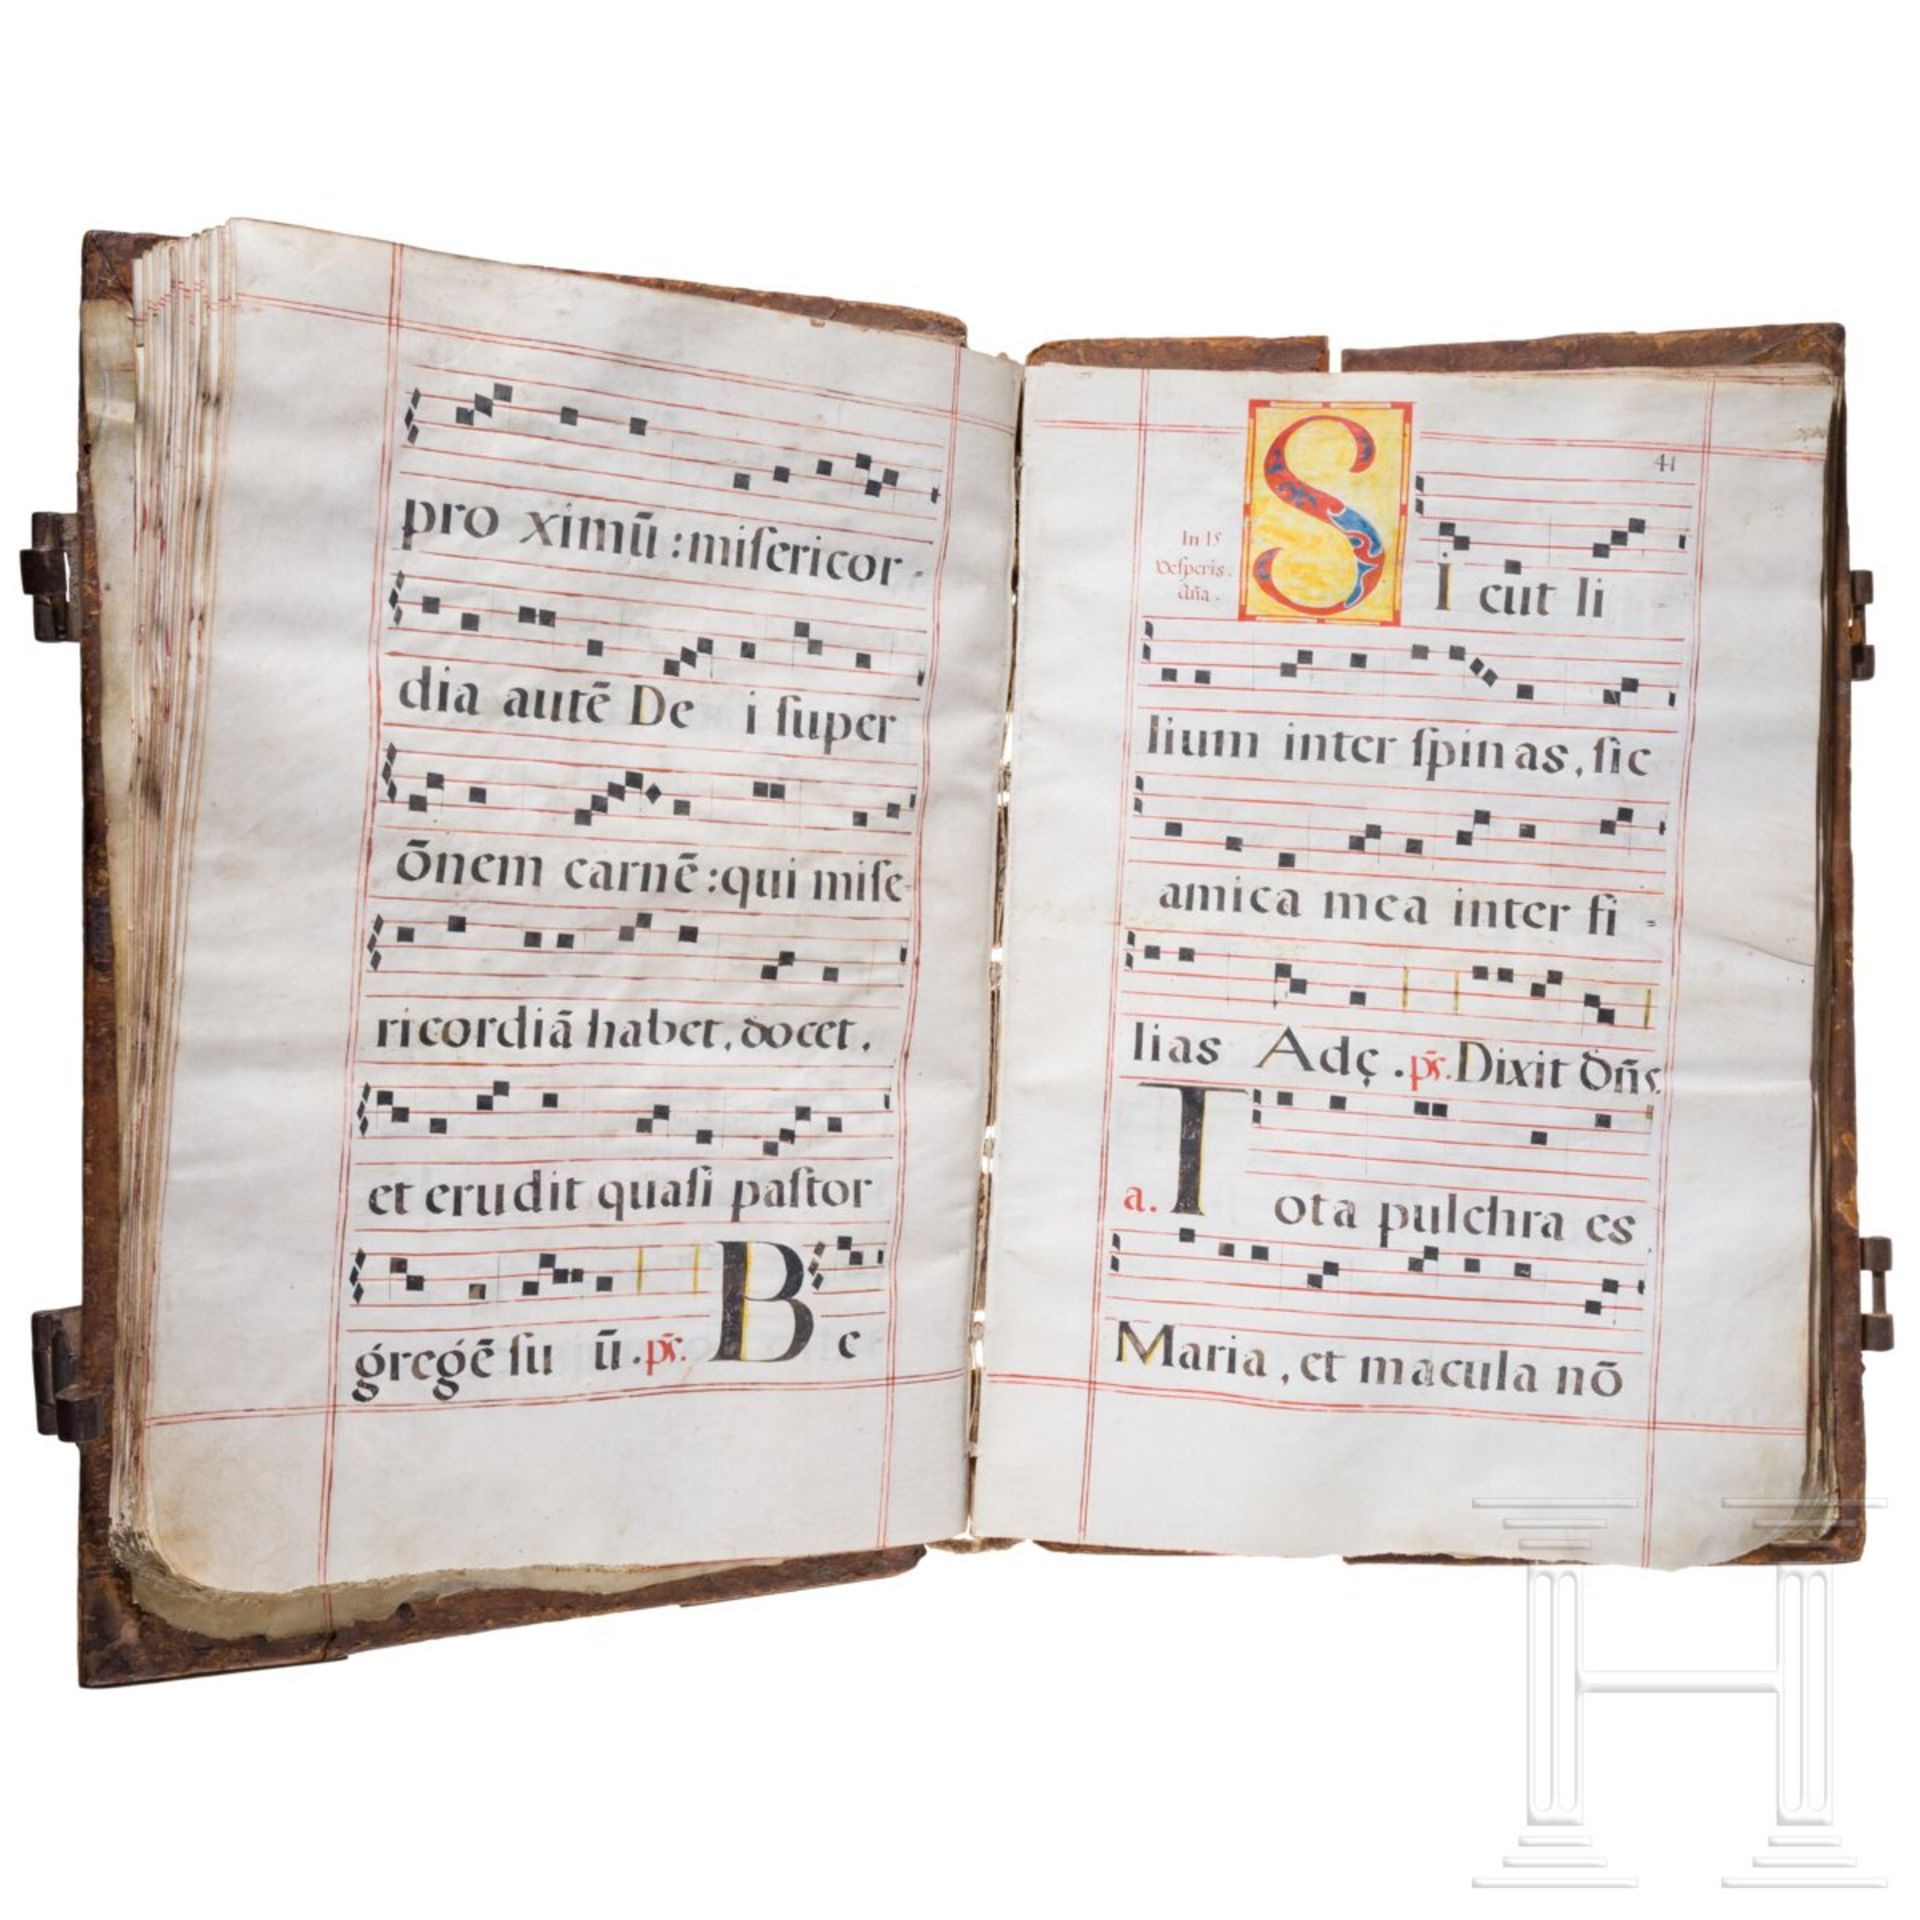 Missale Romanum, Handschrift auf Pergament, Spanien, 16./17. Jhdt. - Bild 2 aus 6